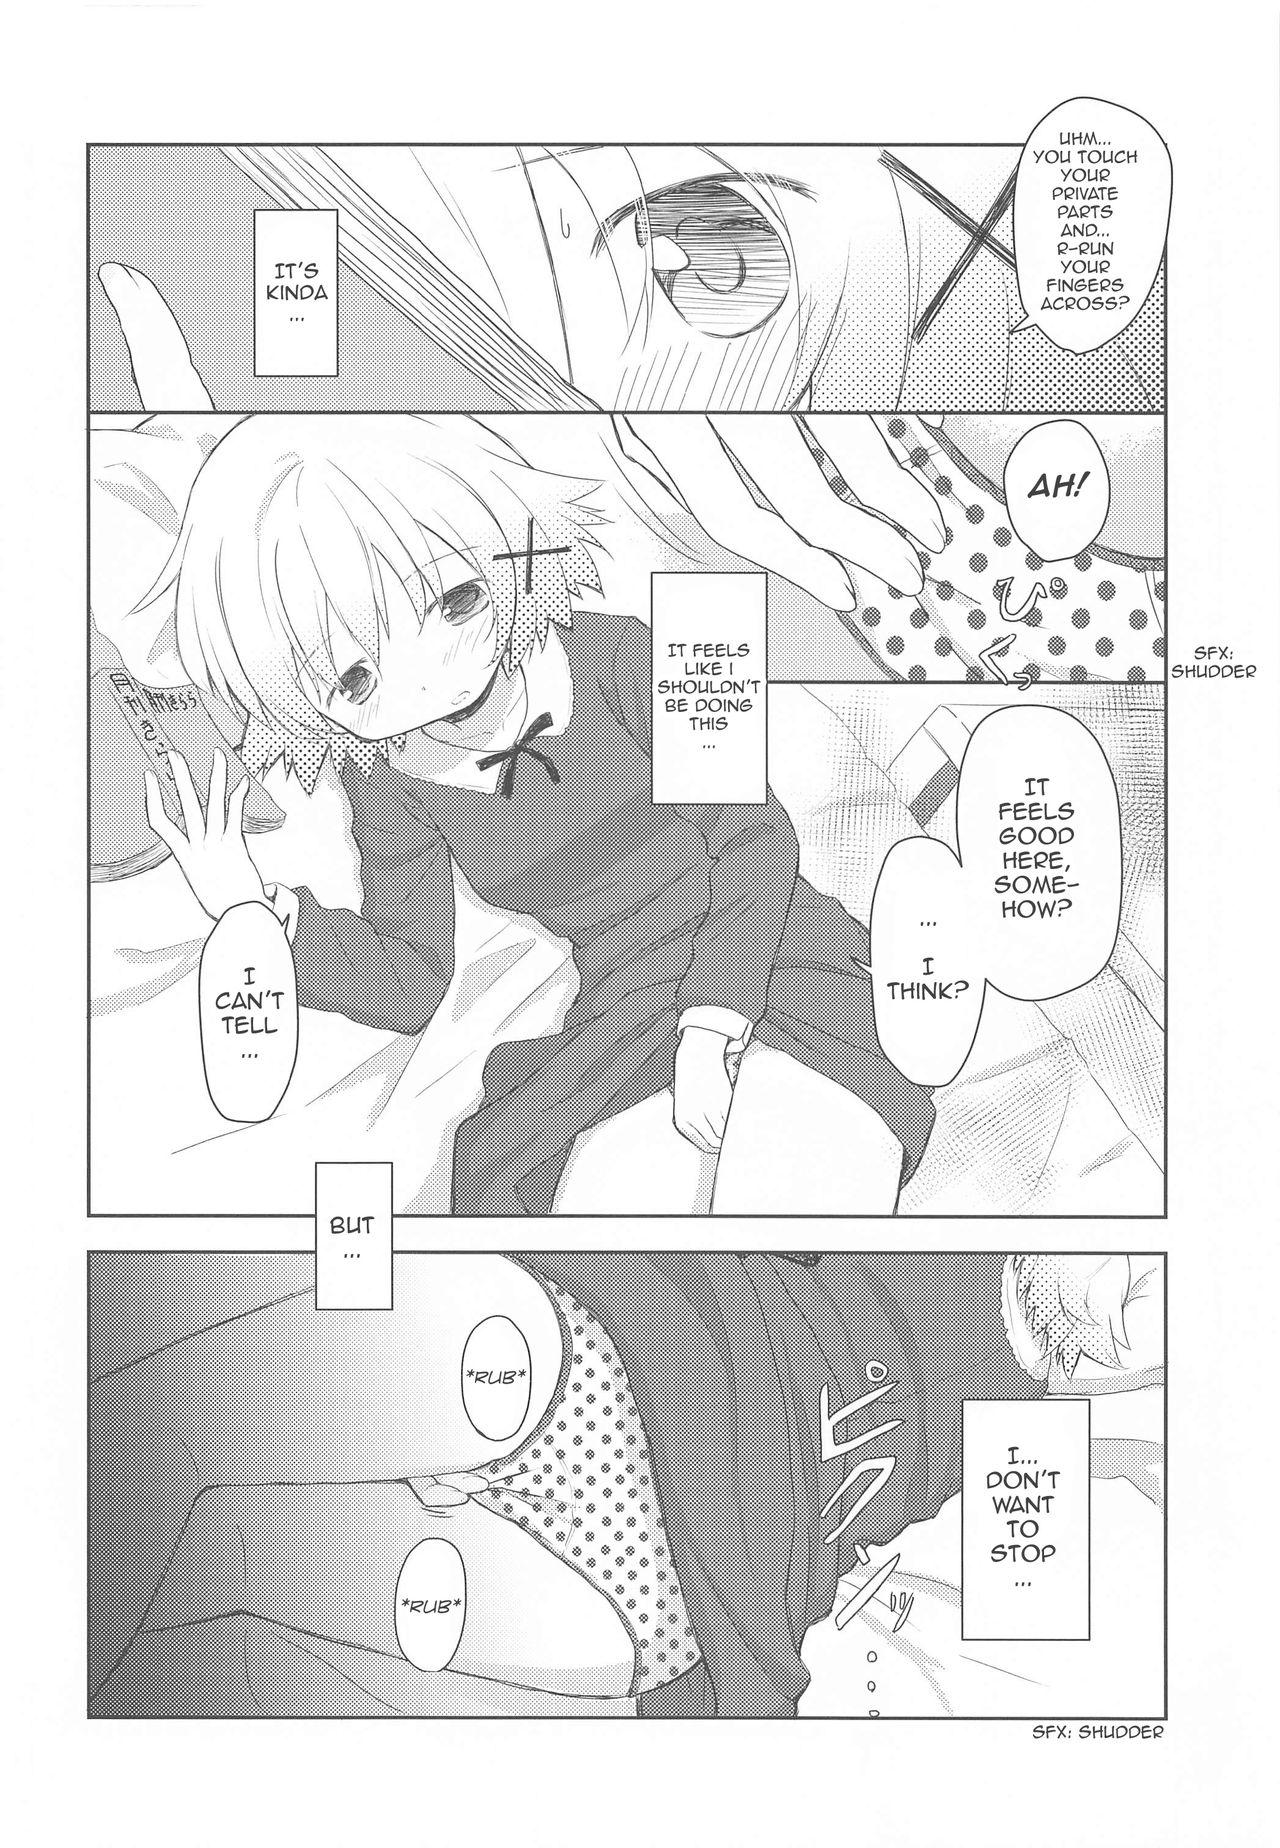 Femboy ×Micha Dame× | ×No Looking× - Hidamari sketch Teenage Sex - Page 5